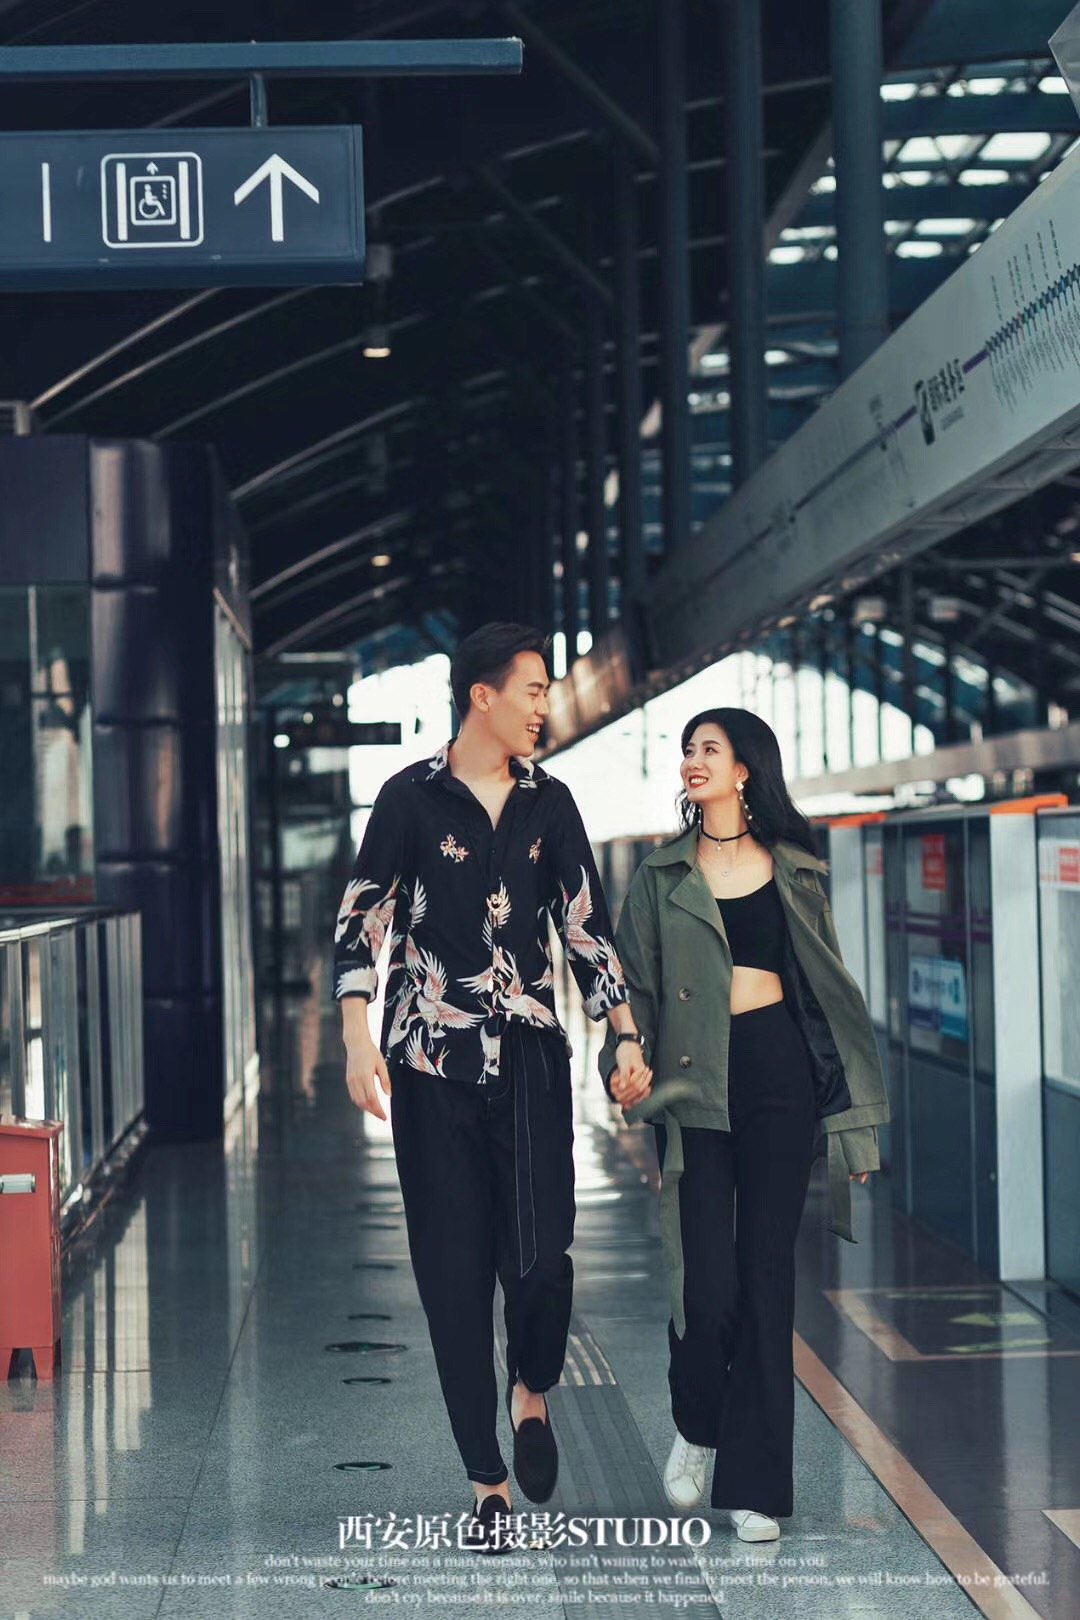 年轻情侣在地铁站-蓝牛仔影像-中国原创广告影像素材